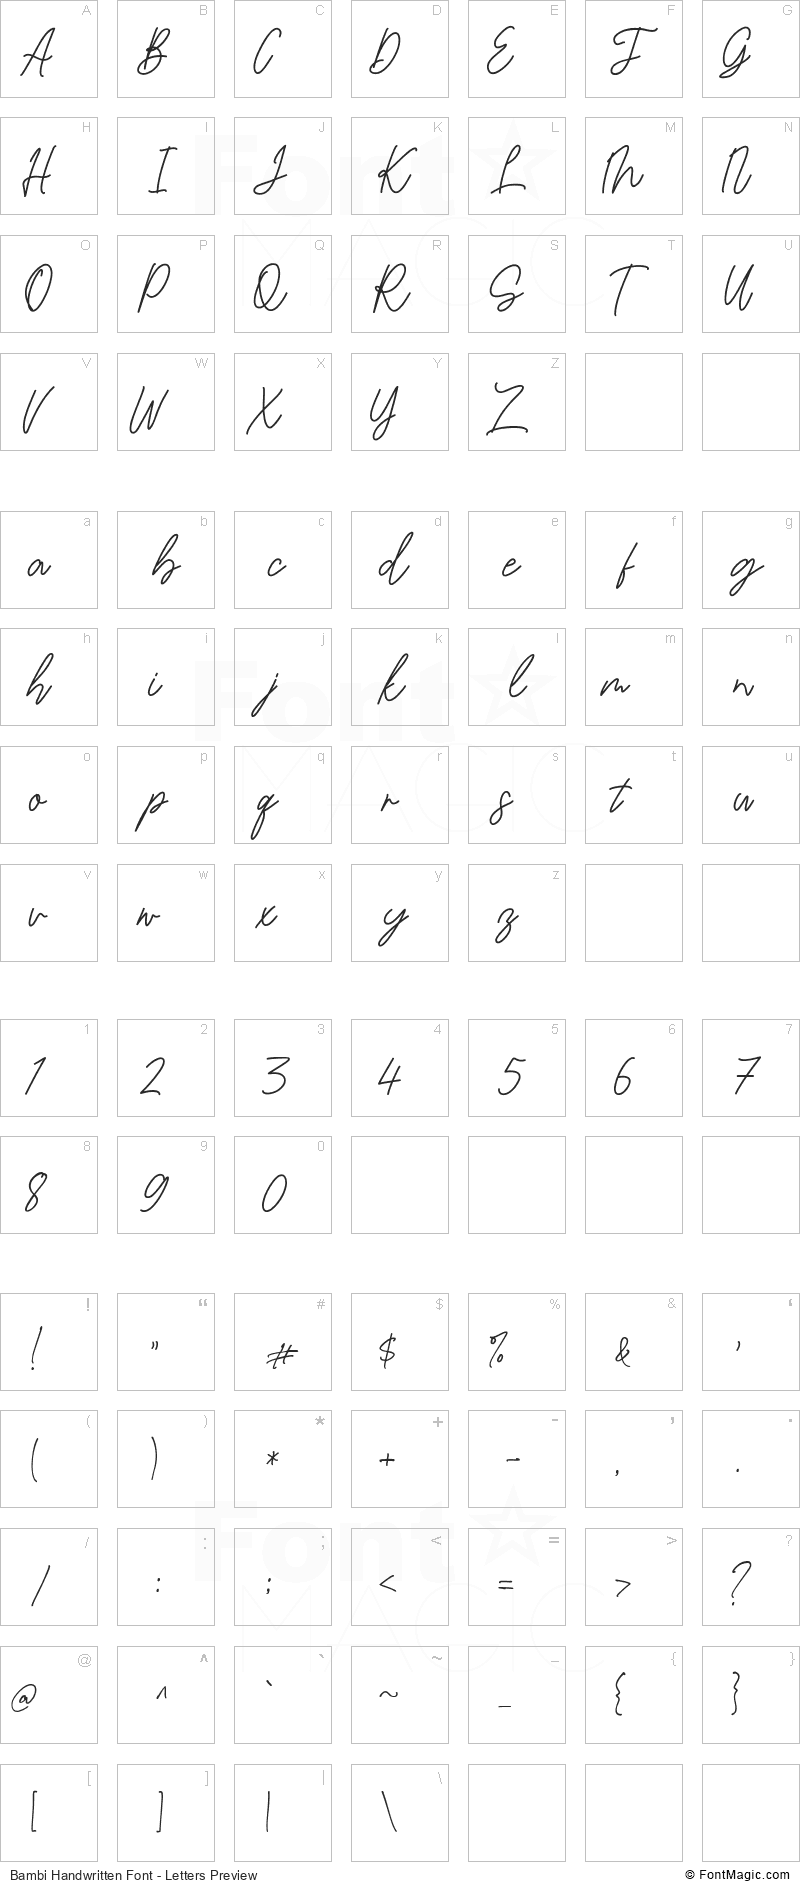 Bambi Handwritten Font - All Latters Preview Chart